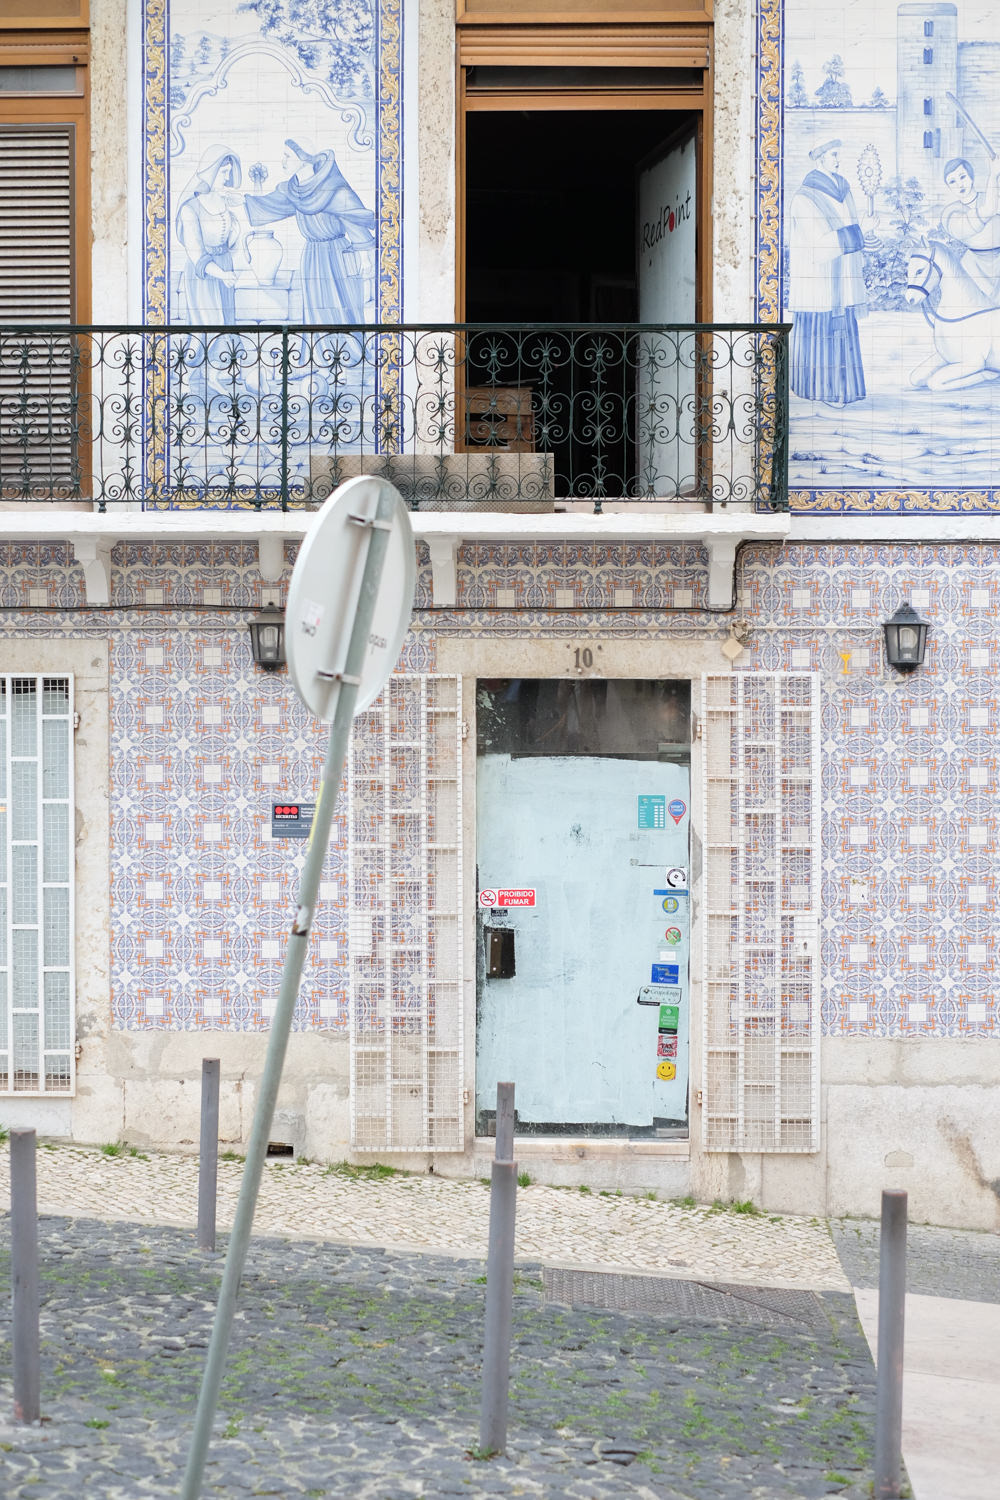 azulejos in Lisbon Portugal